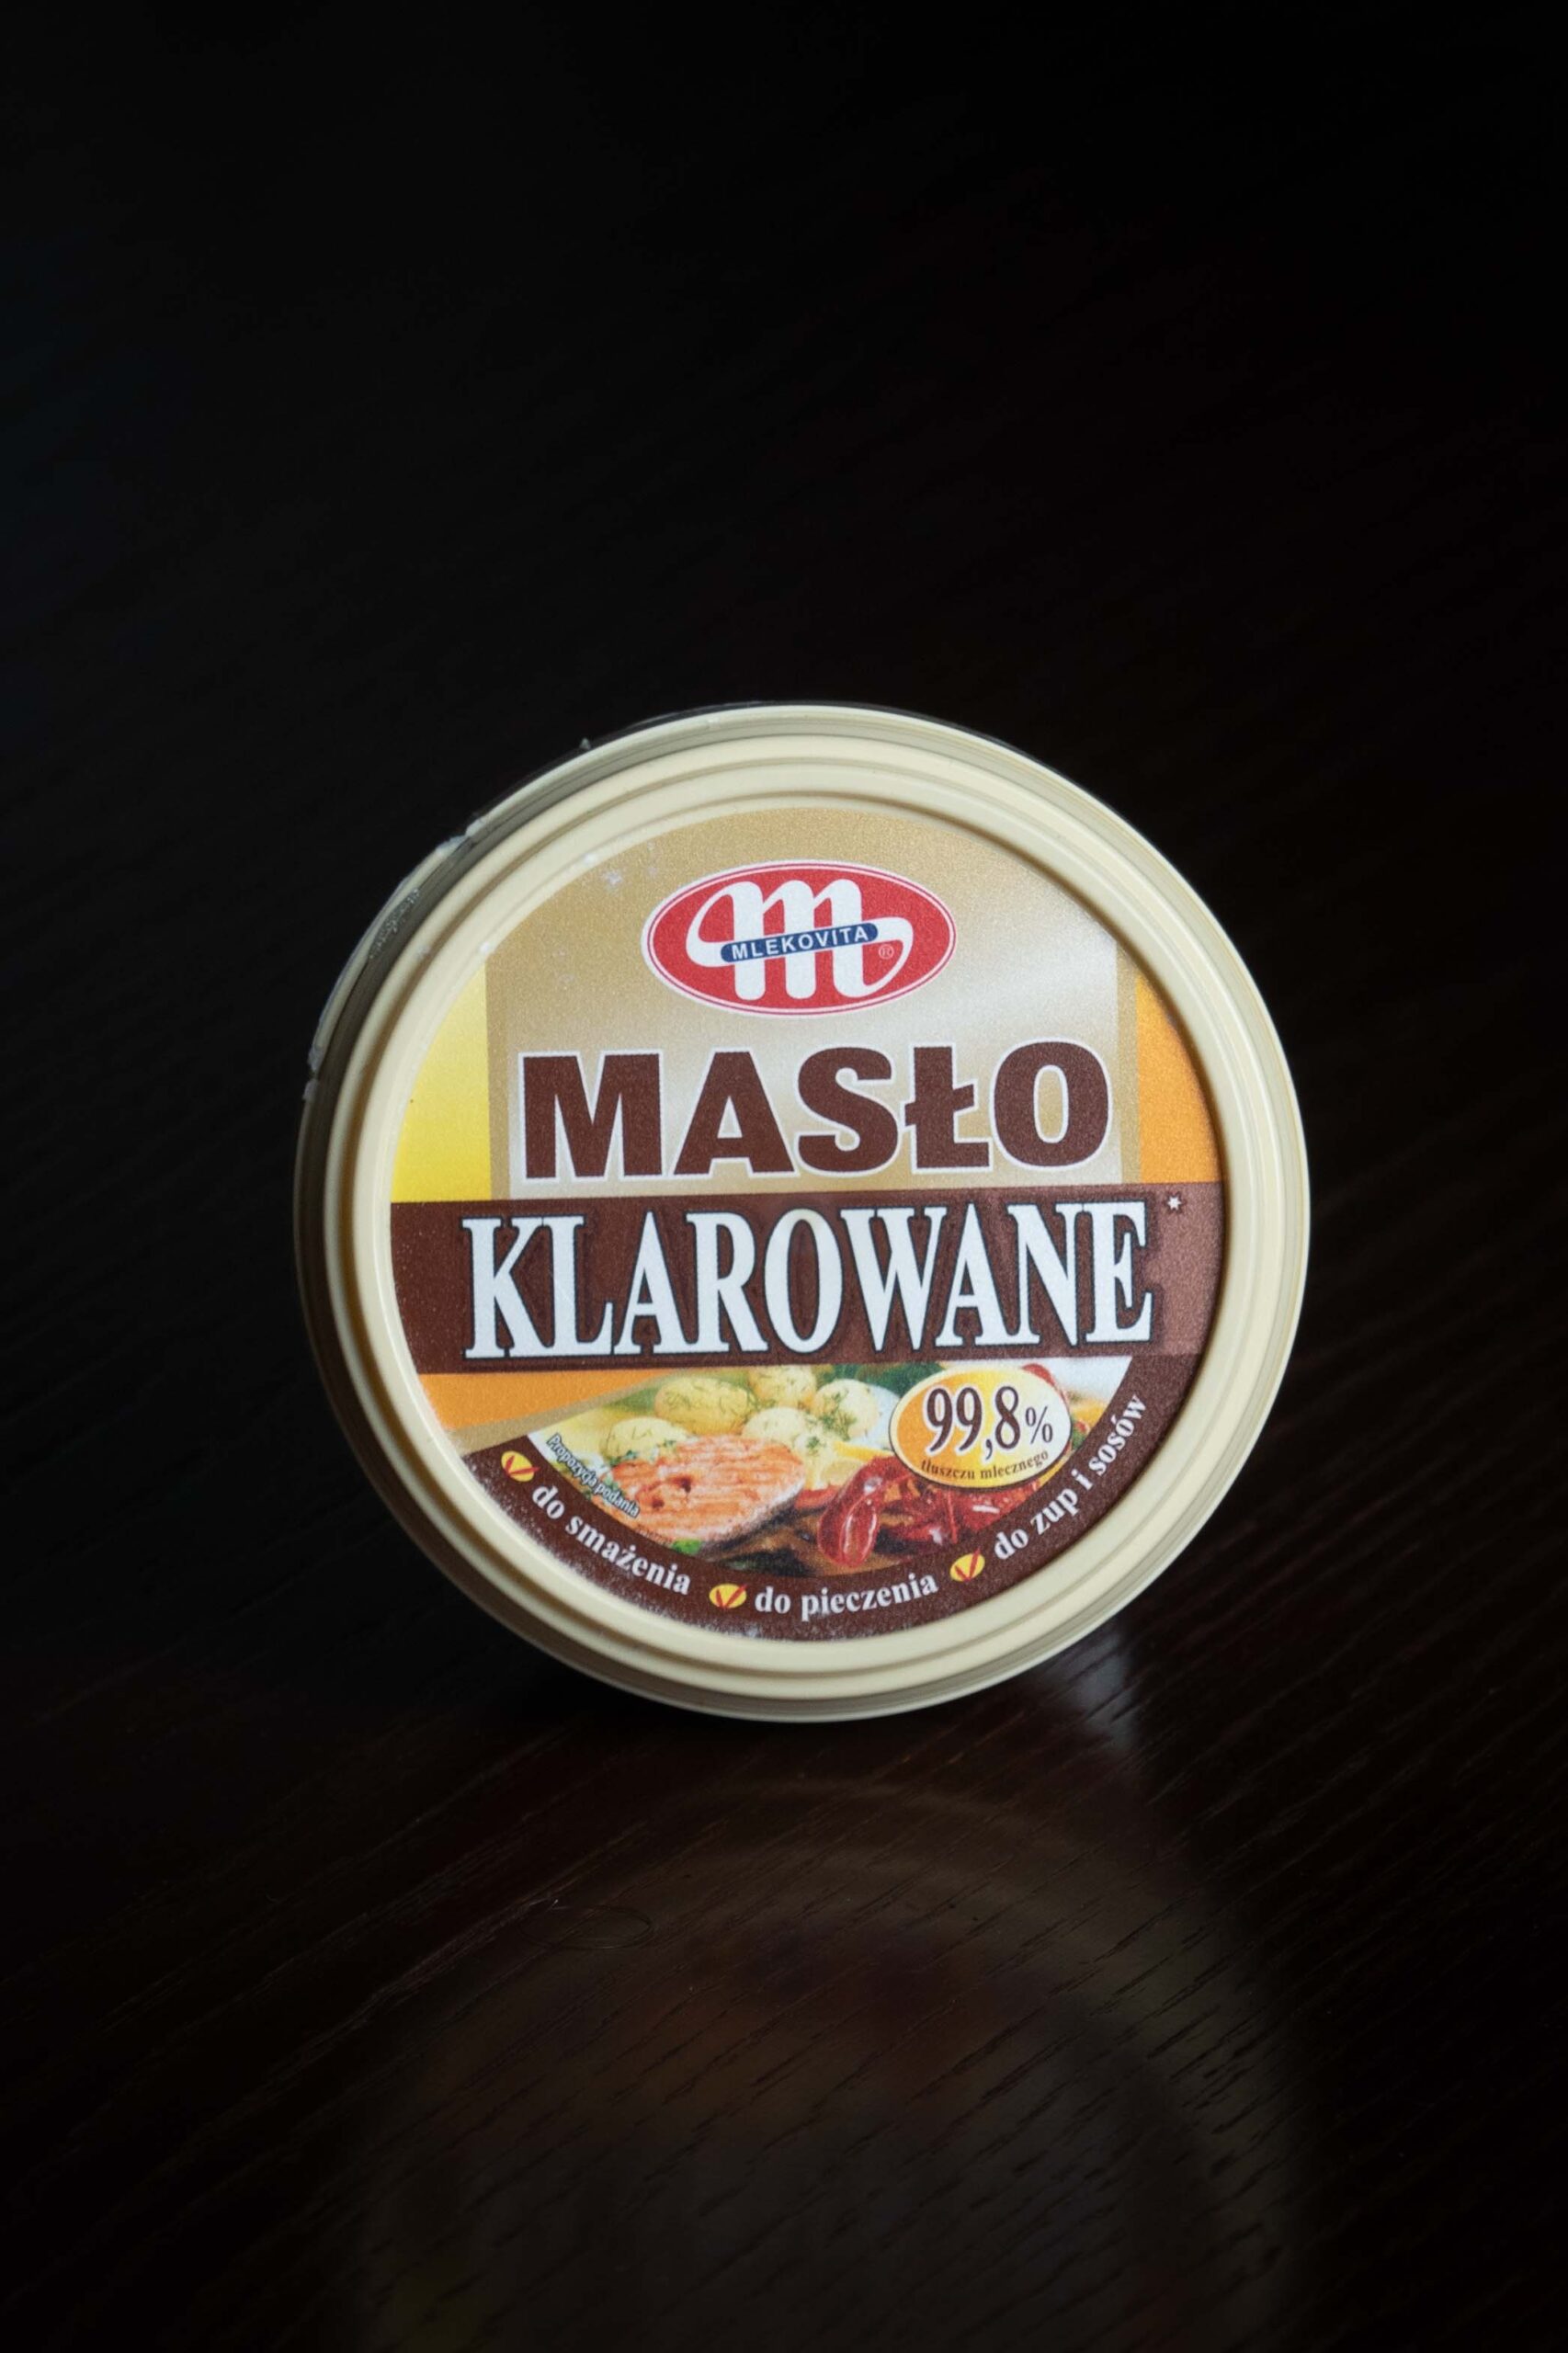 Cisowianka perlage musujaca<br />
szklana 0,7l dostawa pod drzwi Katowice